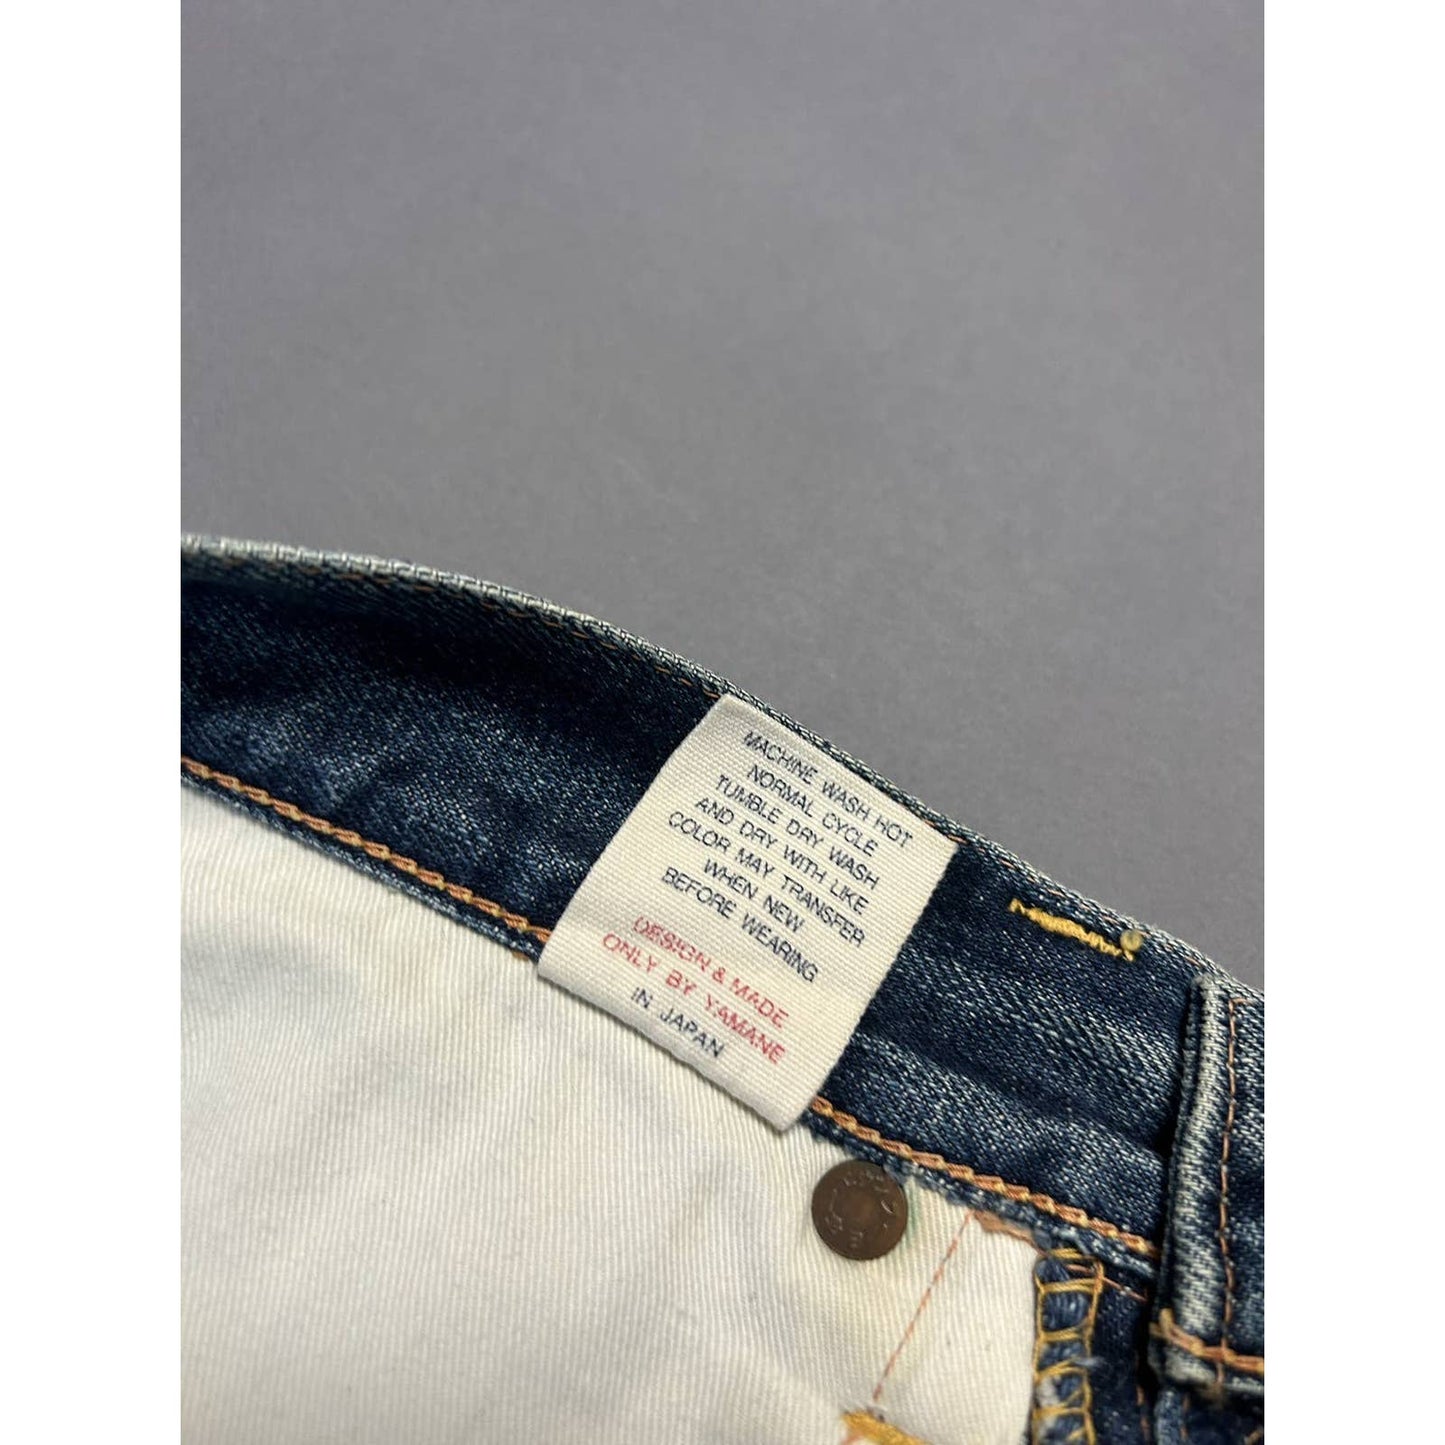 Evisu jeans white daicock big logo blue selvedge denim